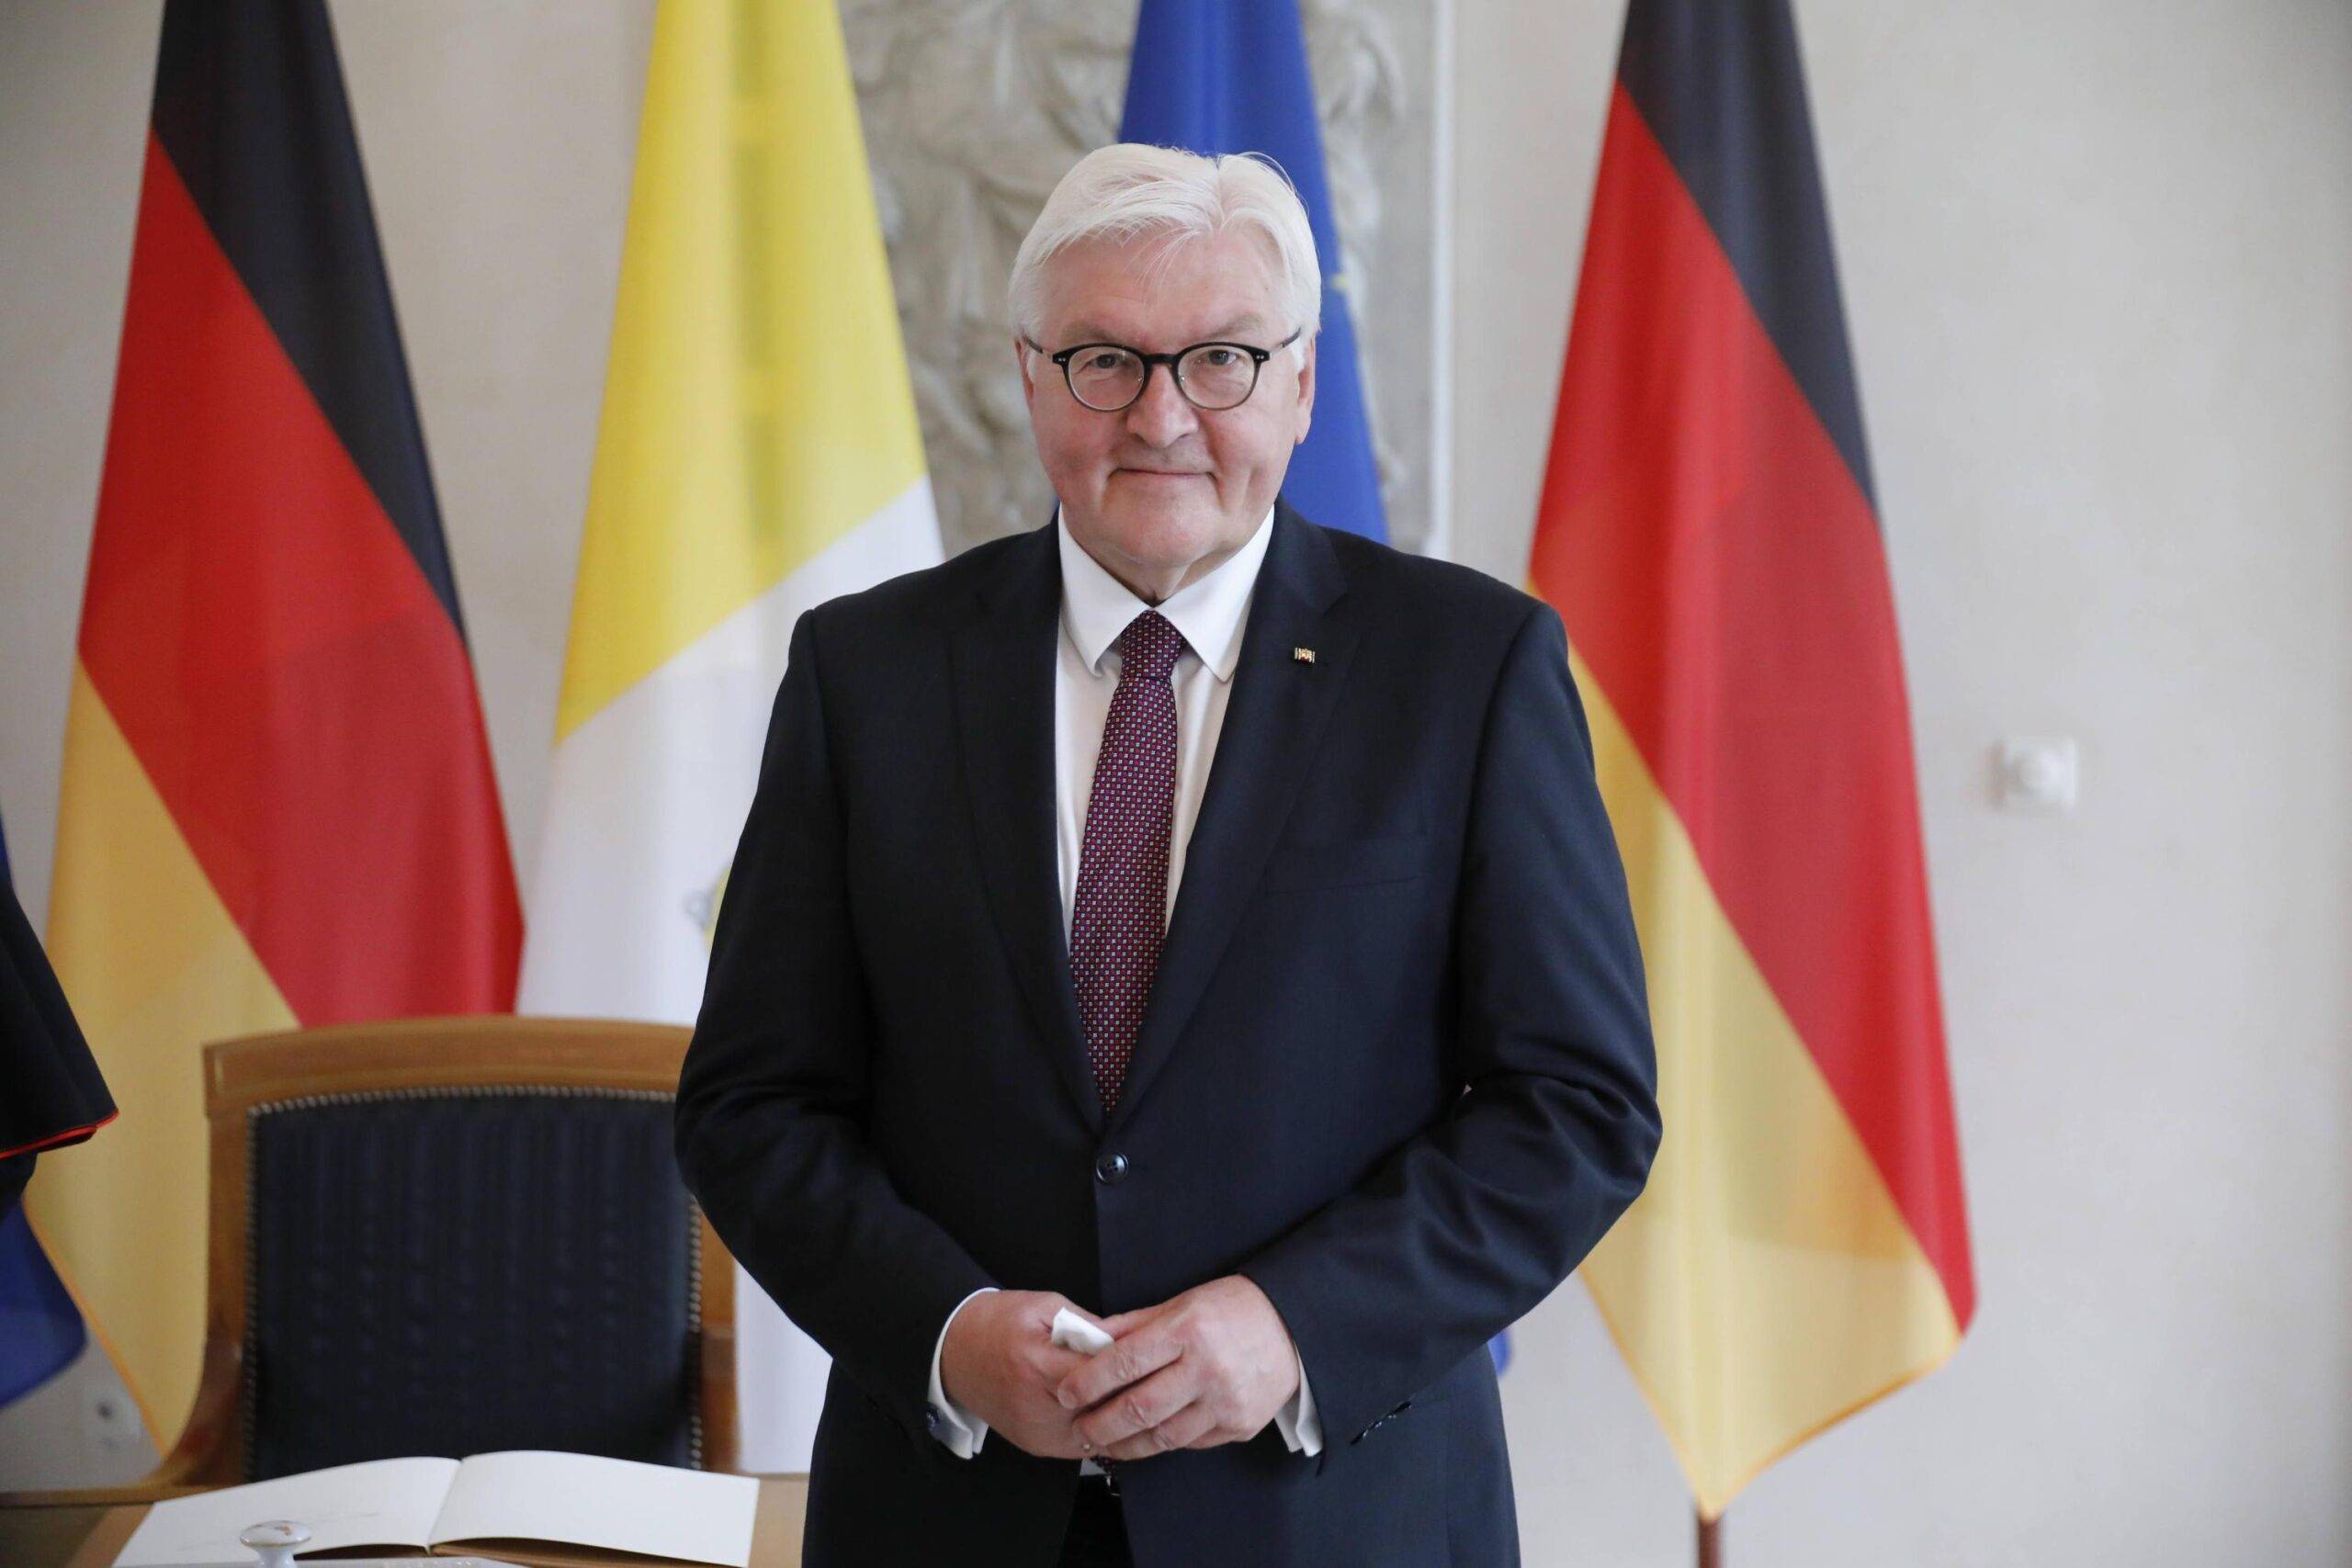 Chișinăul se pregătește să primească vizita președintelui Germaniei